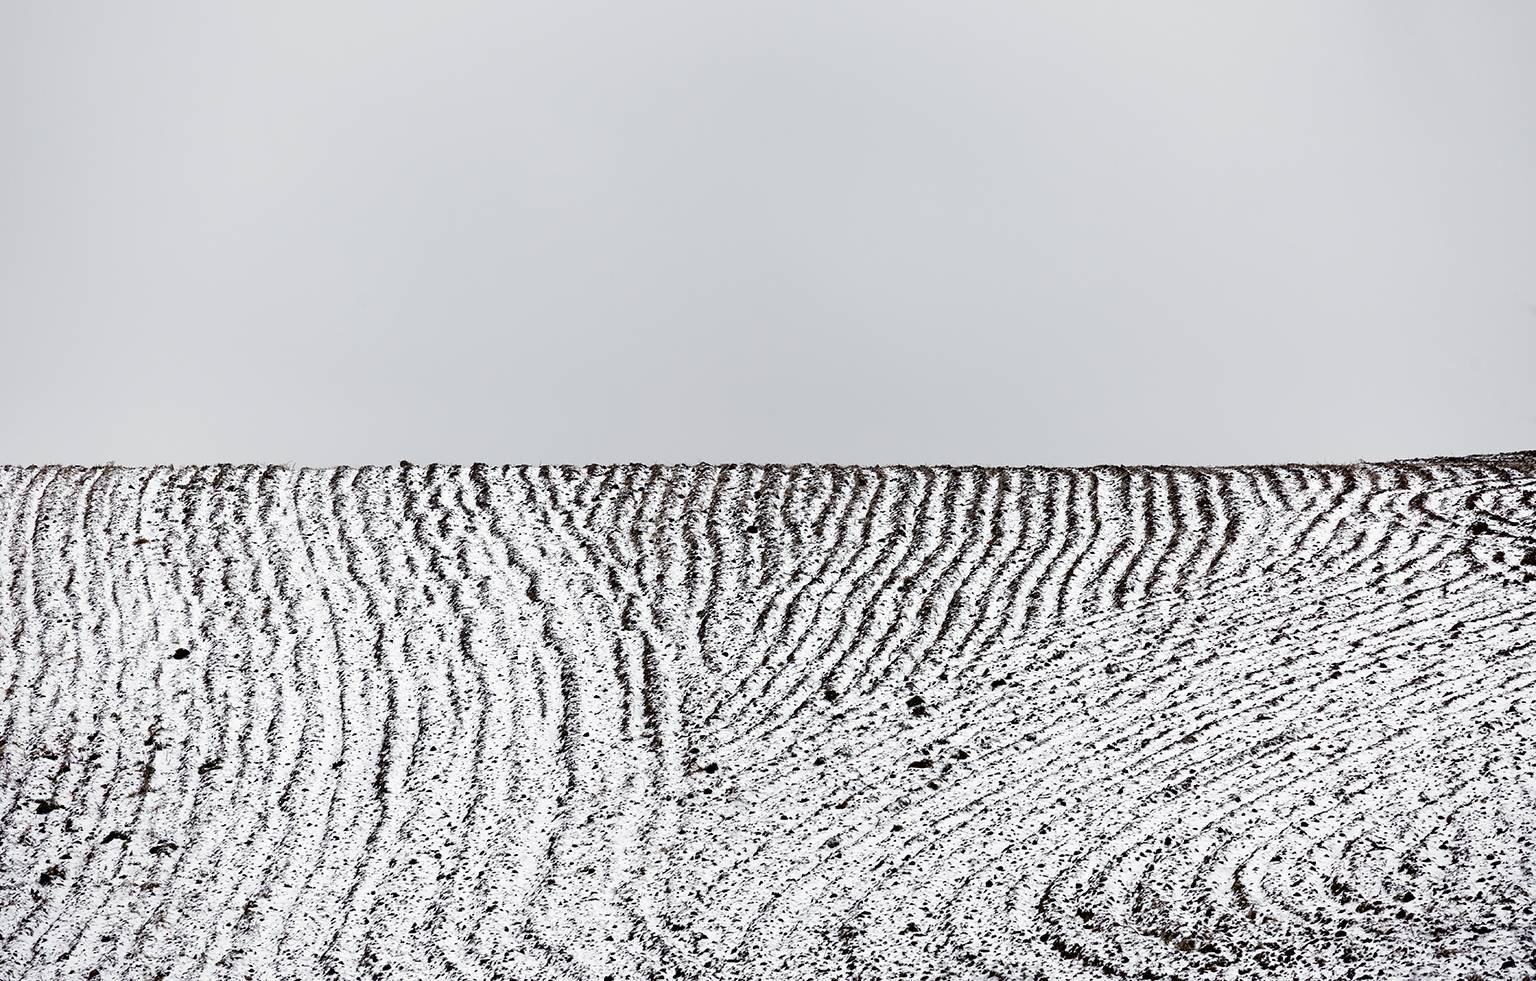 Chris Thomaidis Landscape Photograph - Ploughed Field No. 3